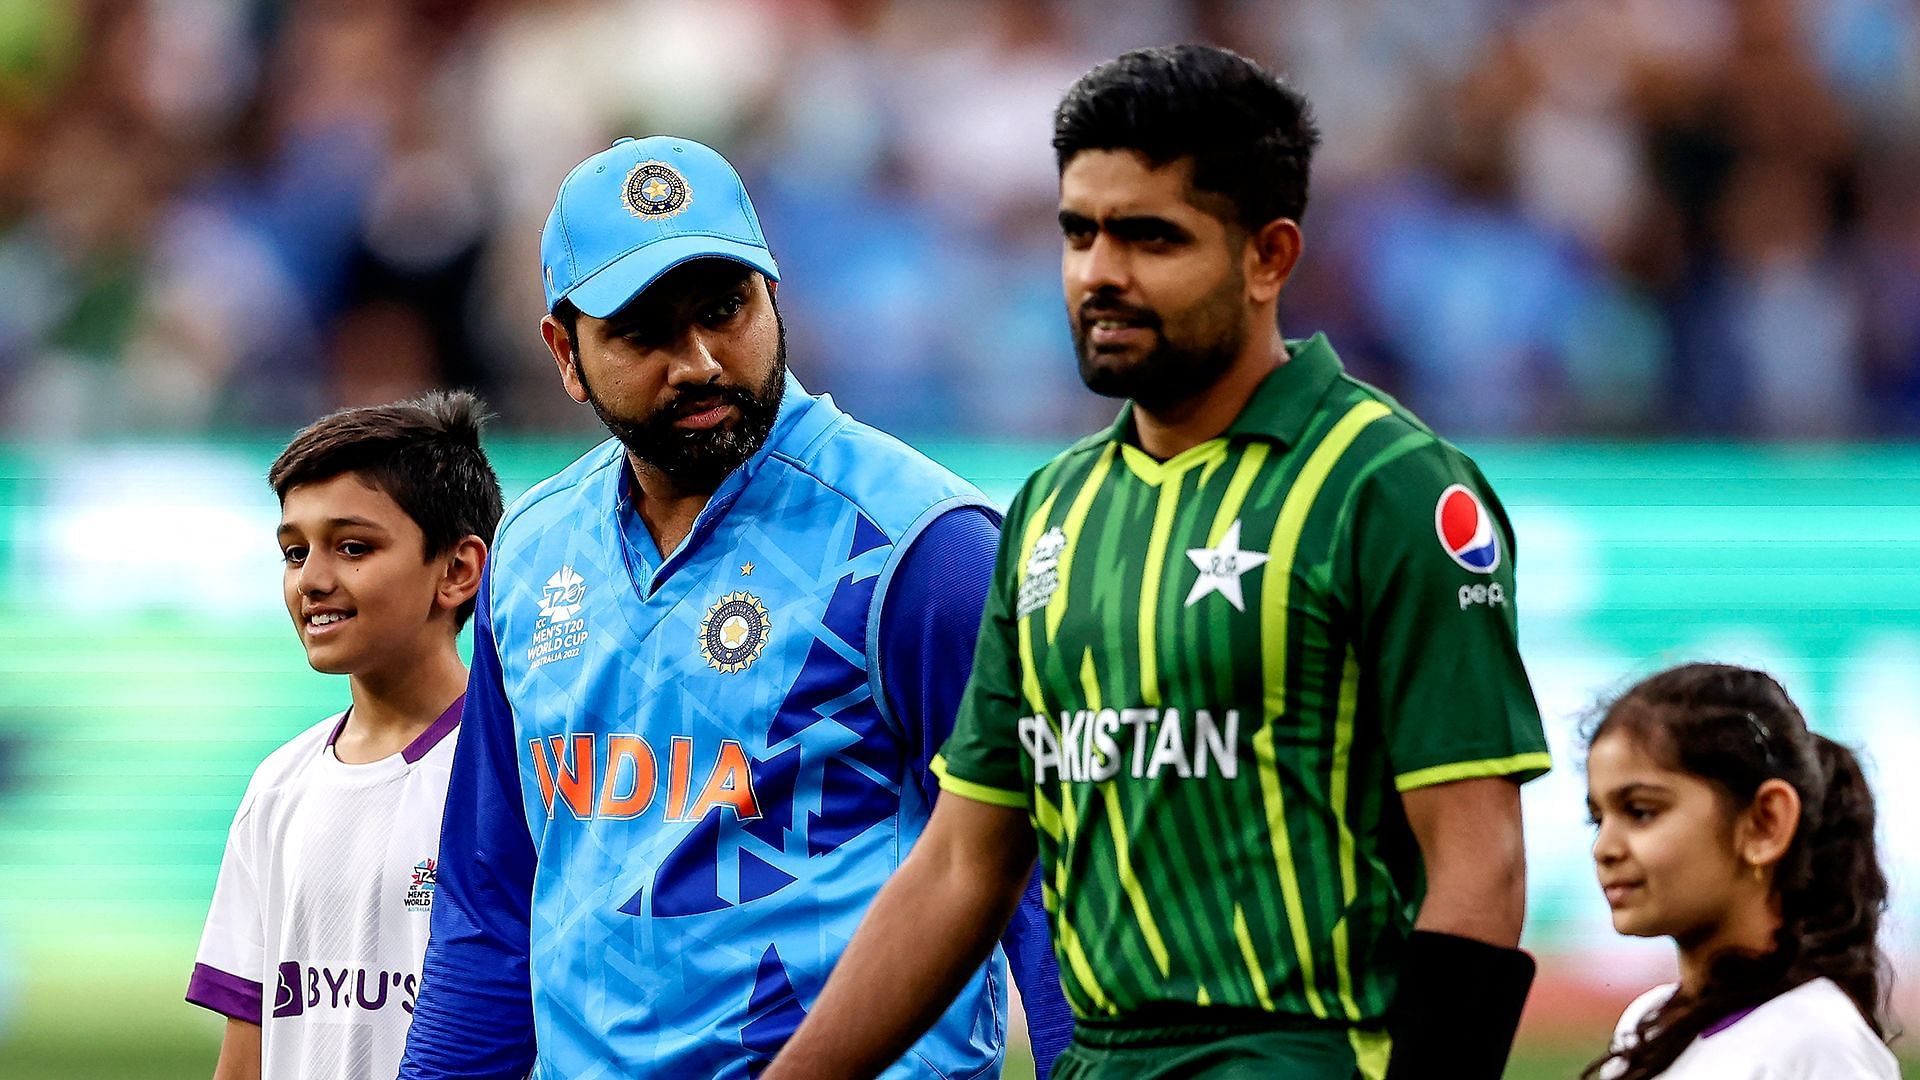 वनडे वर्ल्ड कप में भारत का रिकॉर्ड पाक के खिलाफ शानदार रहा है (Photo Courtesy : ICC)